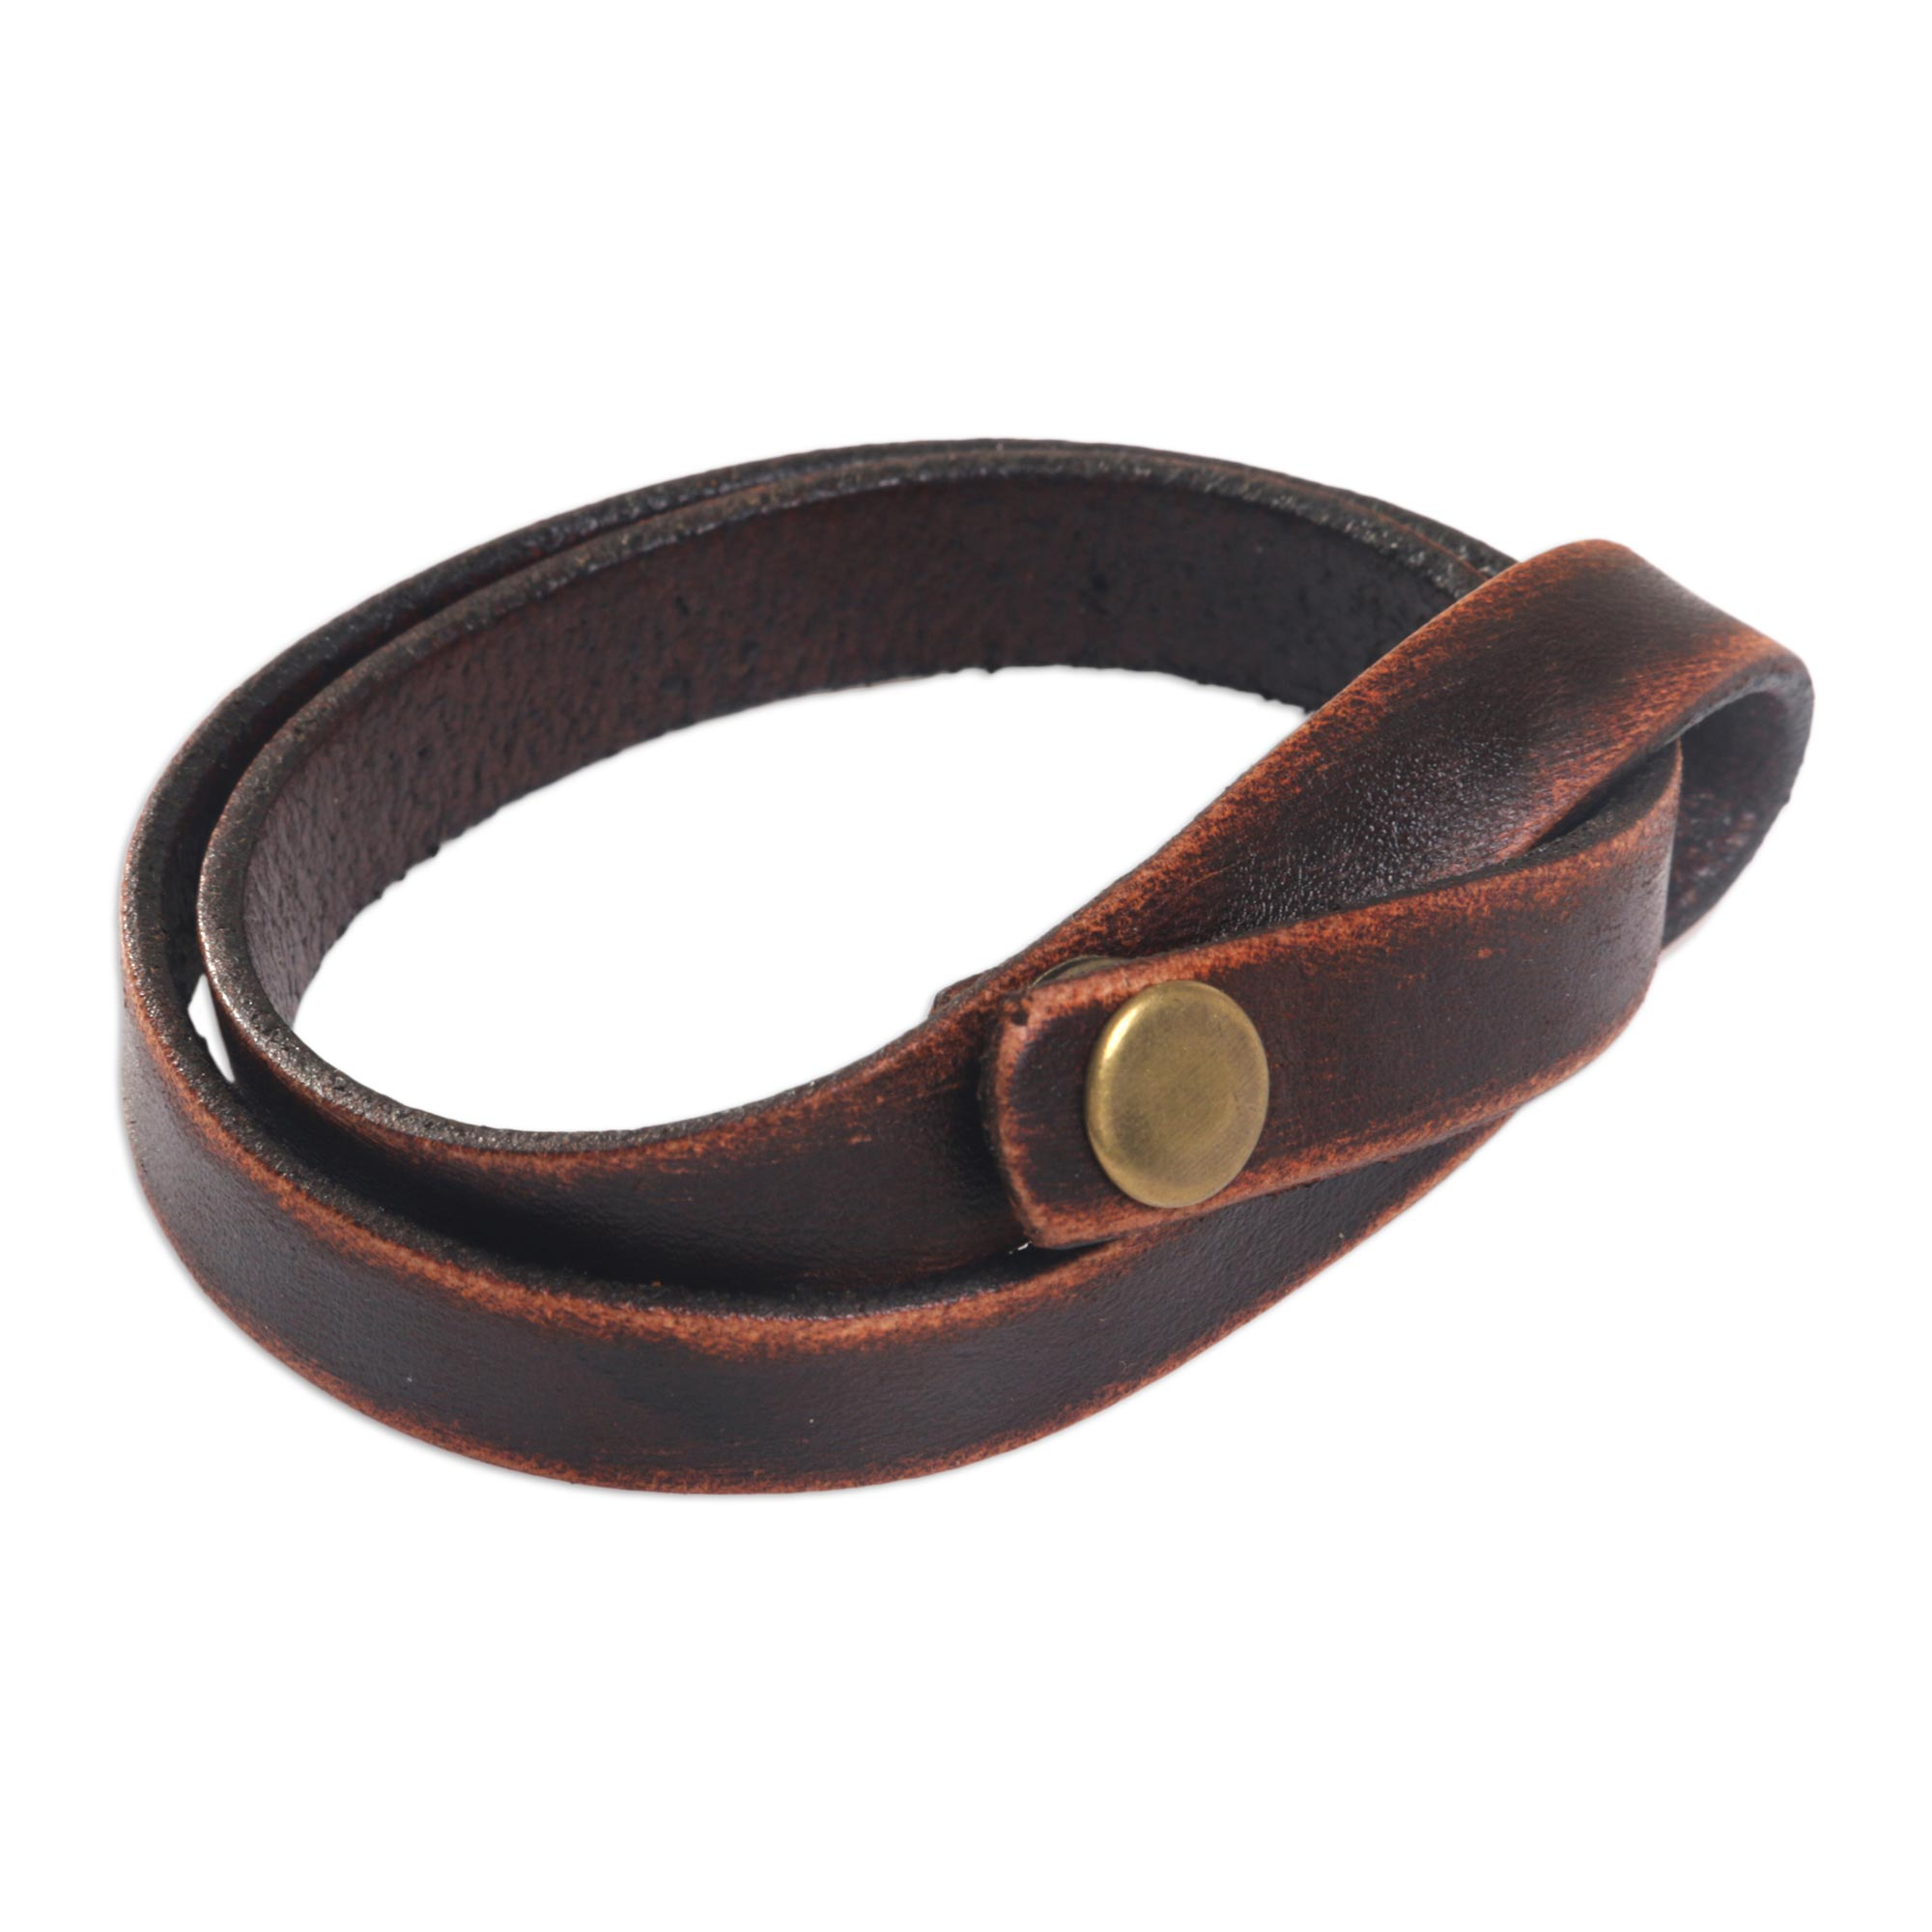 Modern Leather Wrap Bracelet - Daring in Brown | NOVICA